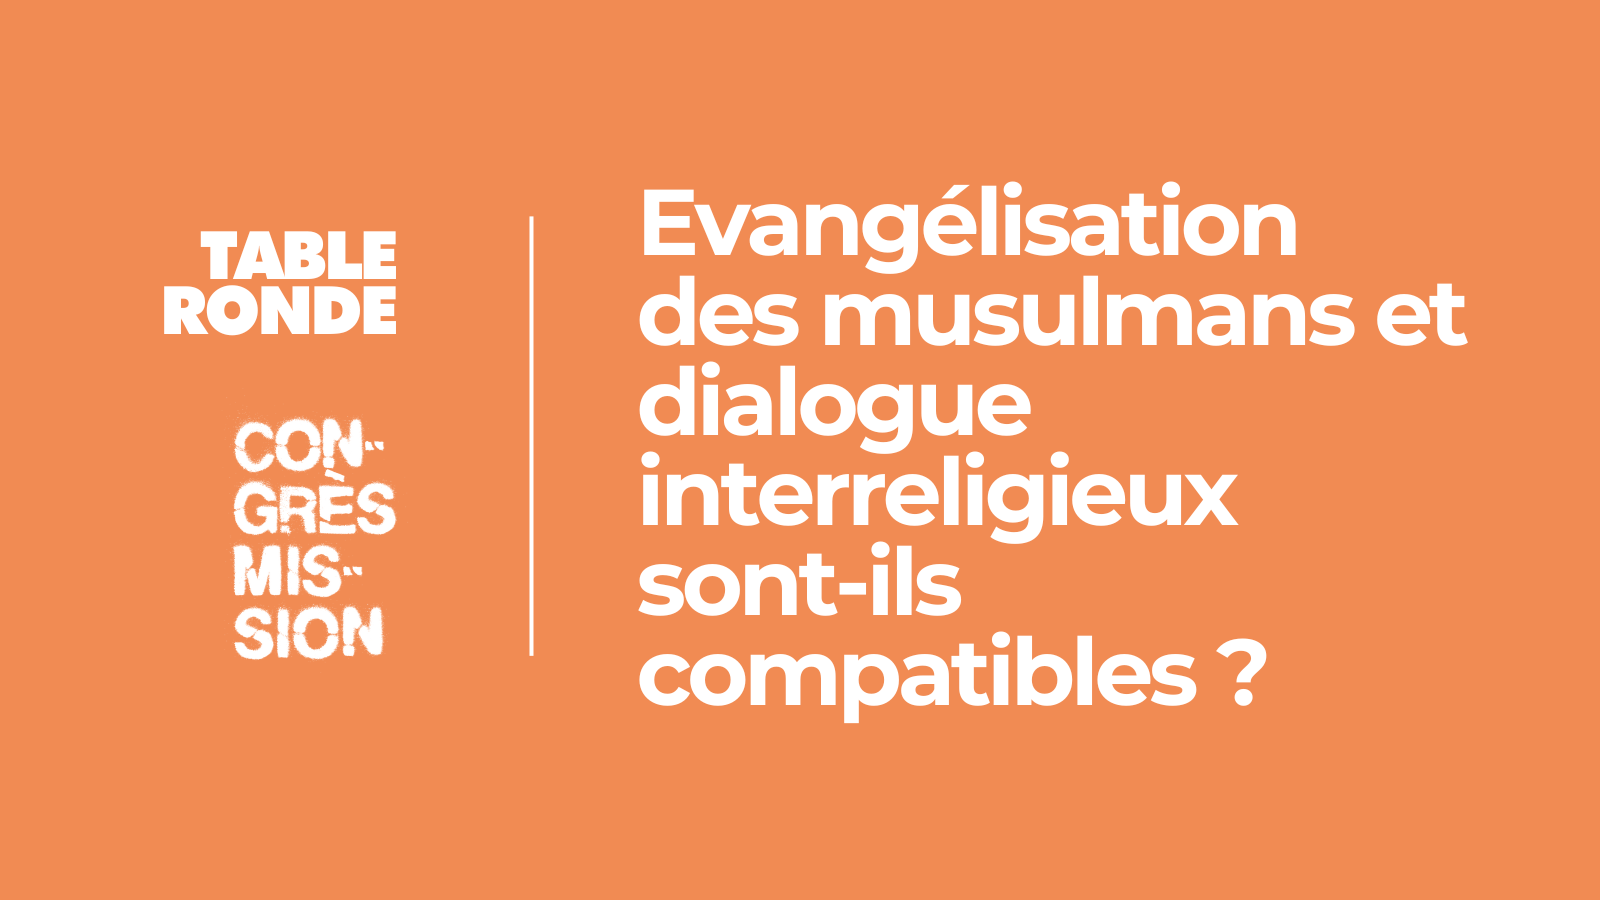 Image - Evangélisation des musulmans et dialogue interreligieux sont-ils compatibles ?